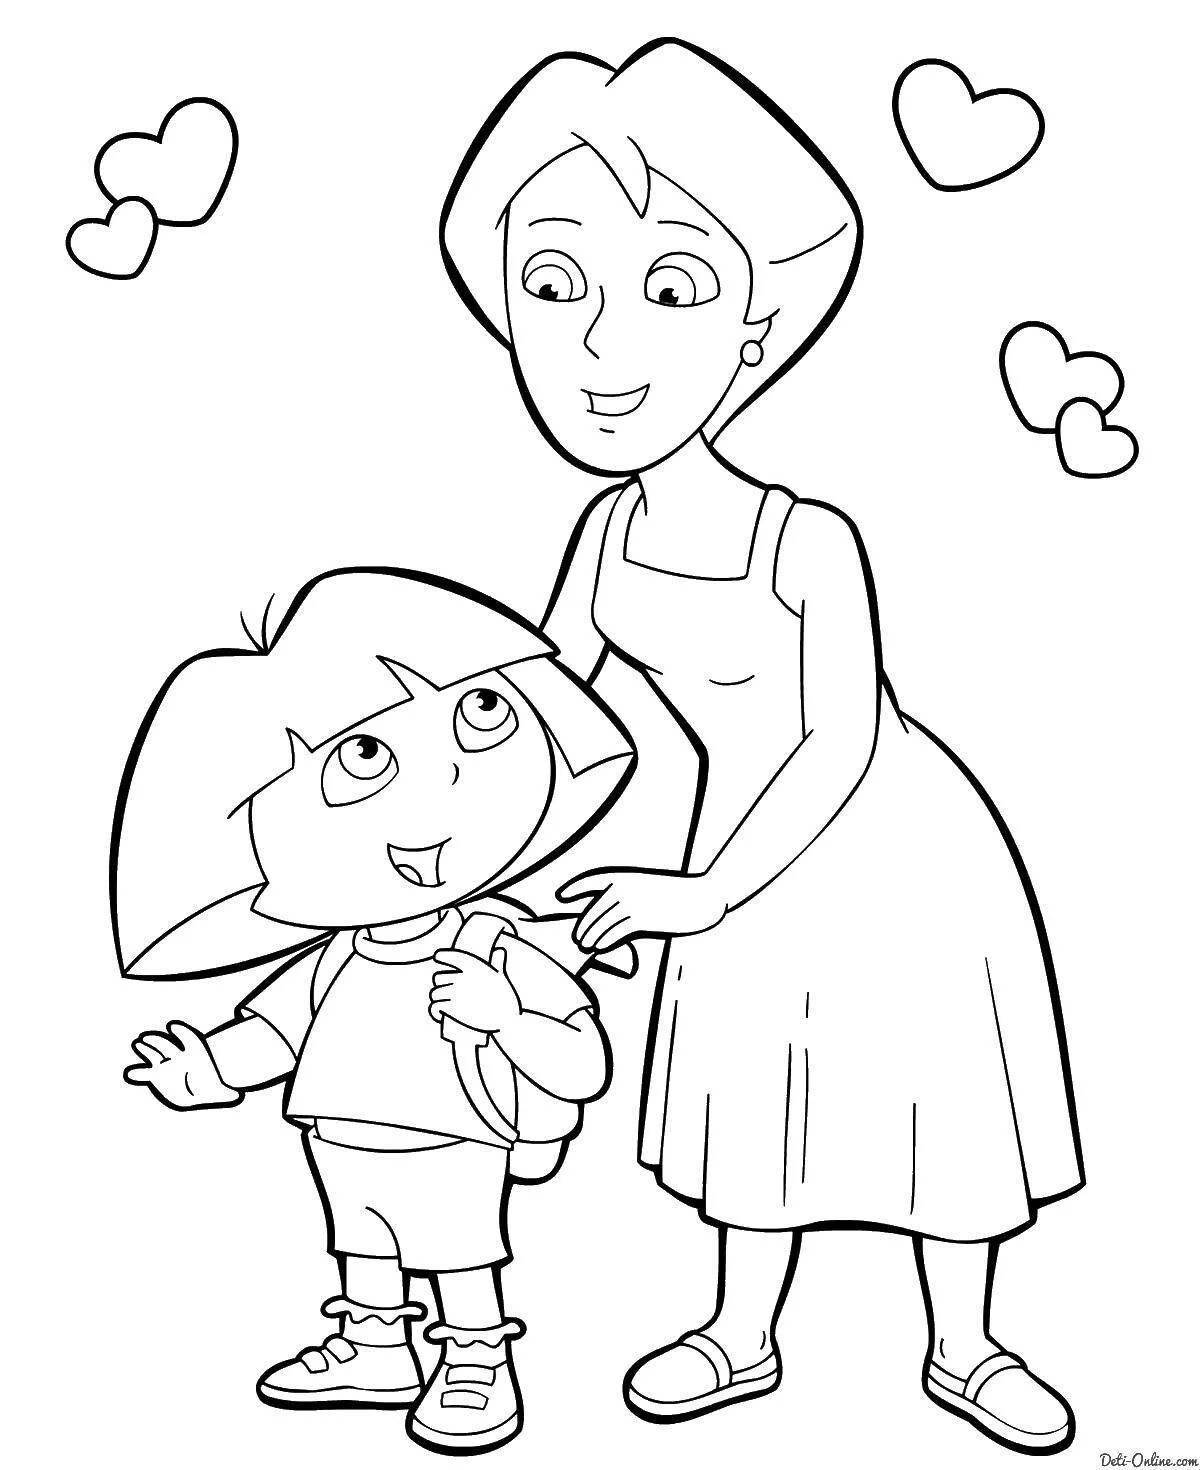 Оживленная страница раскраски «мама и дочь»